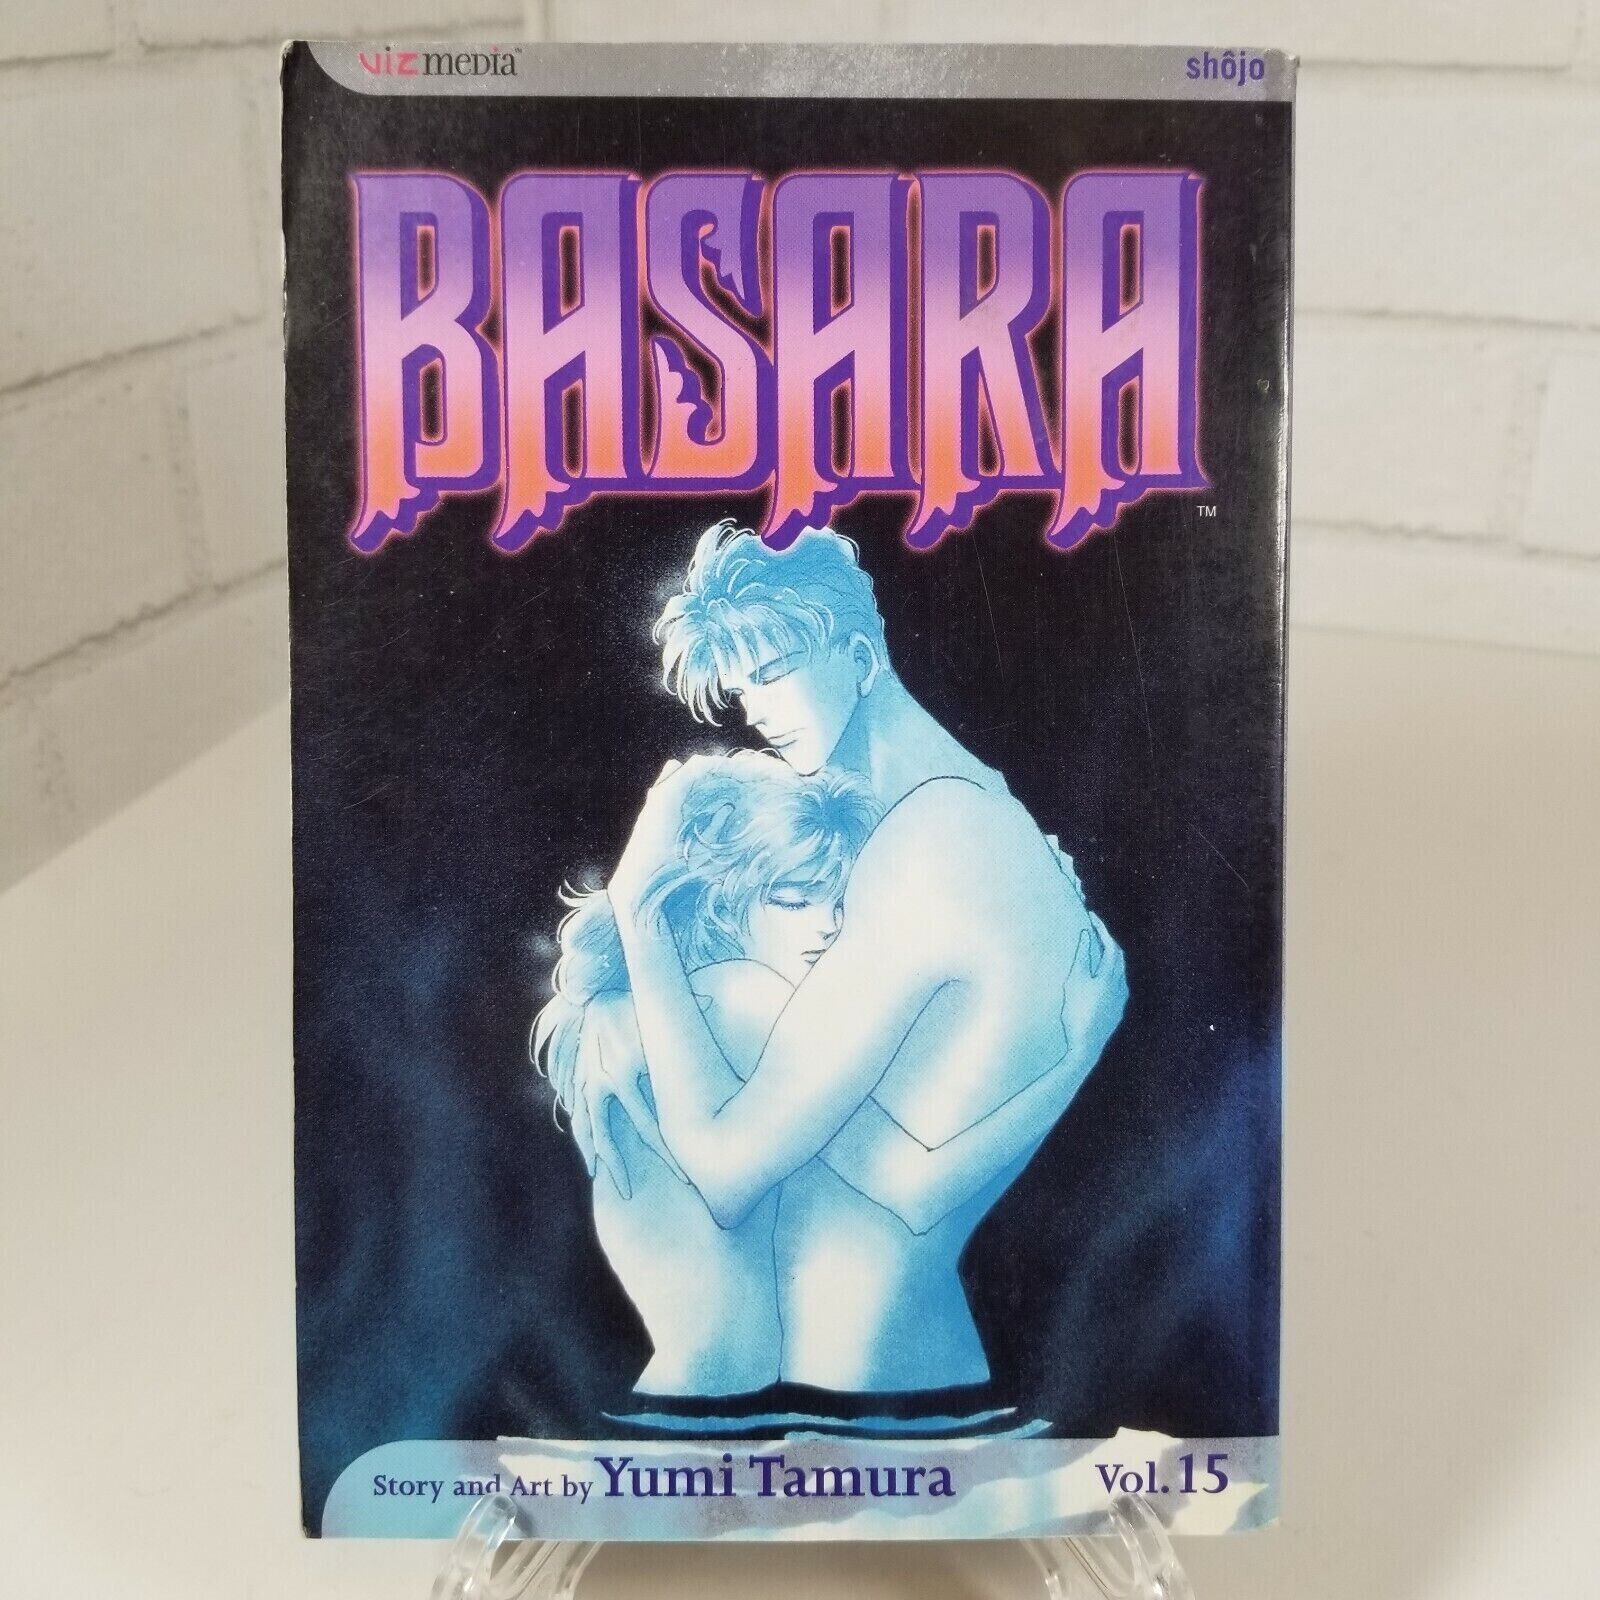 Basara Manga Yumi Tamura Vol Volume 15 Viz Media First Shojo Edition